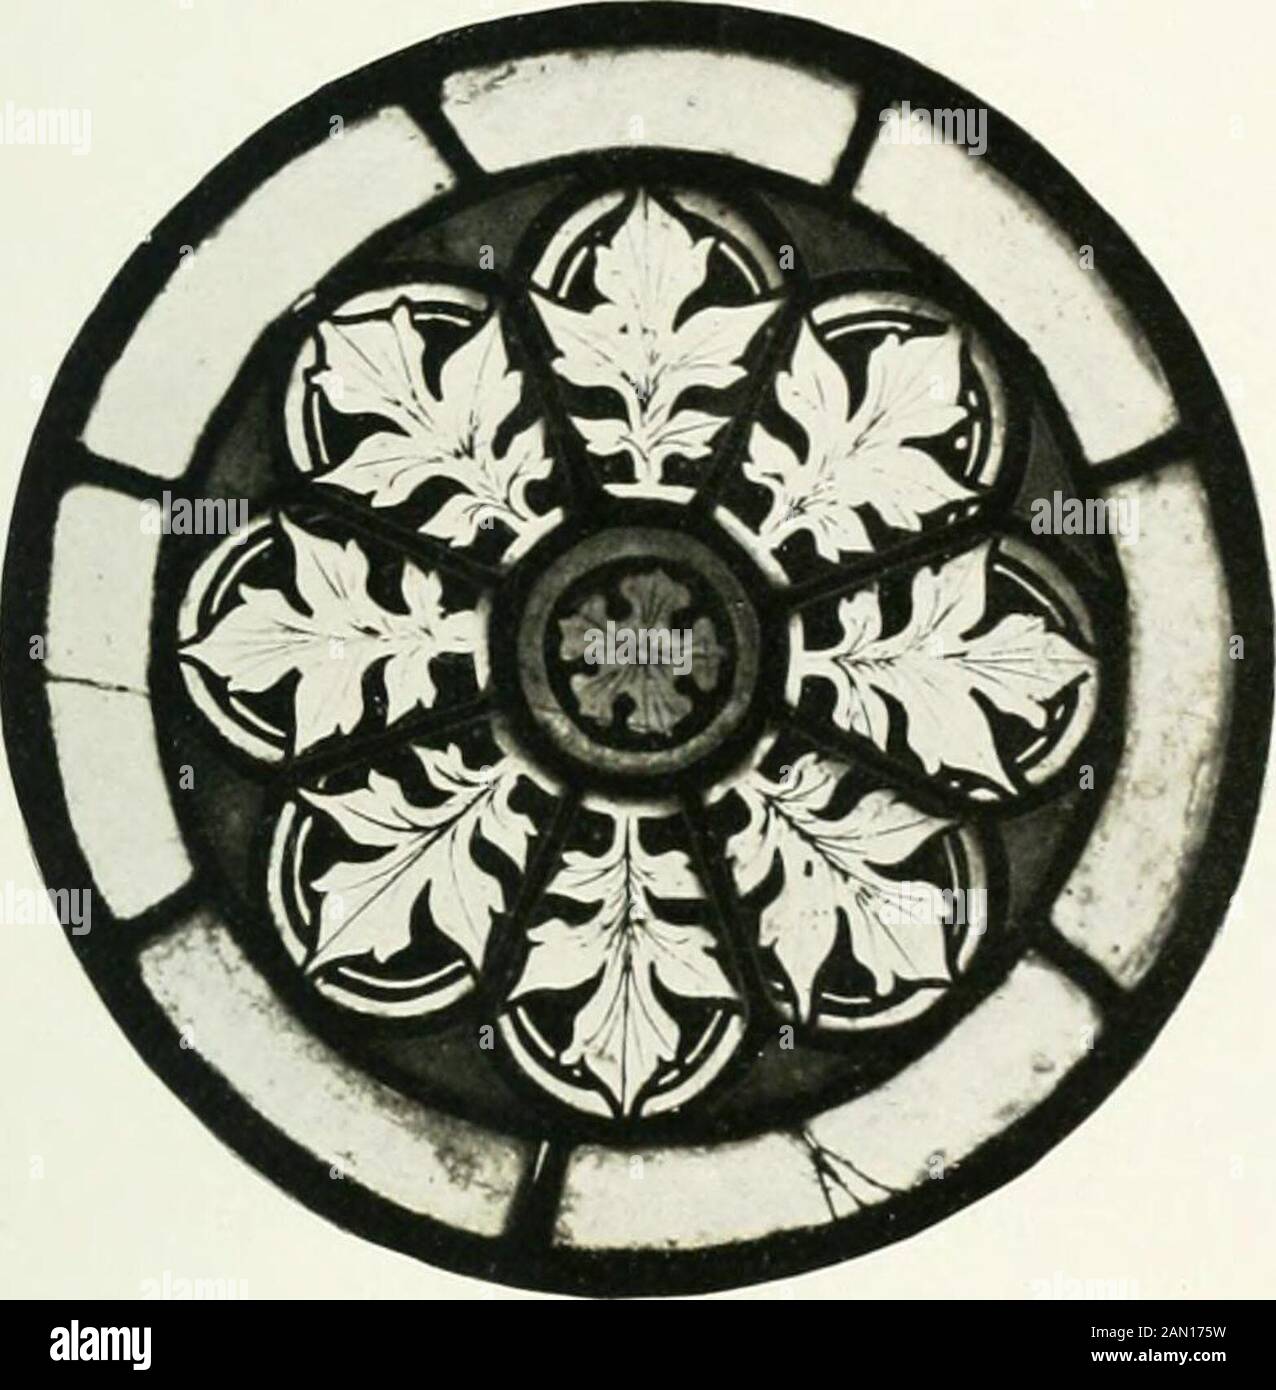 Schwäbische Glasmalerei . gen: Mit Nr. 11 und 12 wahrscheinlich aus derselben Werkstatt. Schwäbisch, 1300 - 1350. 11. Frammento einer vierpaßartigen Maßwerkfüllung. In der Mitte, WO vier Kreiseeinander berühren, befindet sich eine kleine rote Rosette, mit Blattornamentent ausgefüllt.In die von den einzelnen Kreisengegenseitig überschnittenen Flächensind kleine Stücke blaues Glas ein-gesetzt. In jedem Kreis ein stili-siertes Efeublatt. (Vergl. Kunstge-schichtliches S. 3.) Maß: 10,5 cm Durchmesser. Technik: Hüttenglas. Erhaltung: Ein Blatt ist mitaltem Glas restauriert. Erwerbung: Unbekannt. Bemerkung Foto Stock